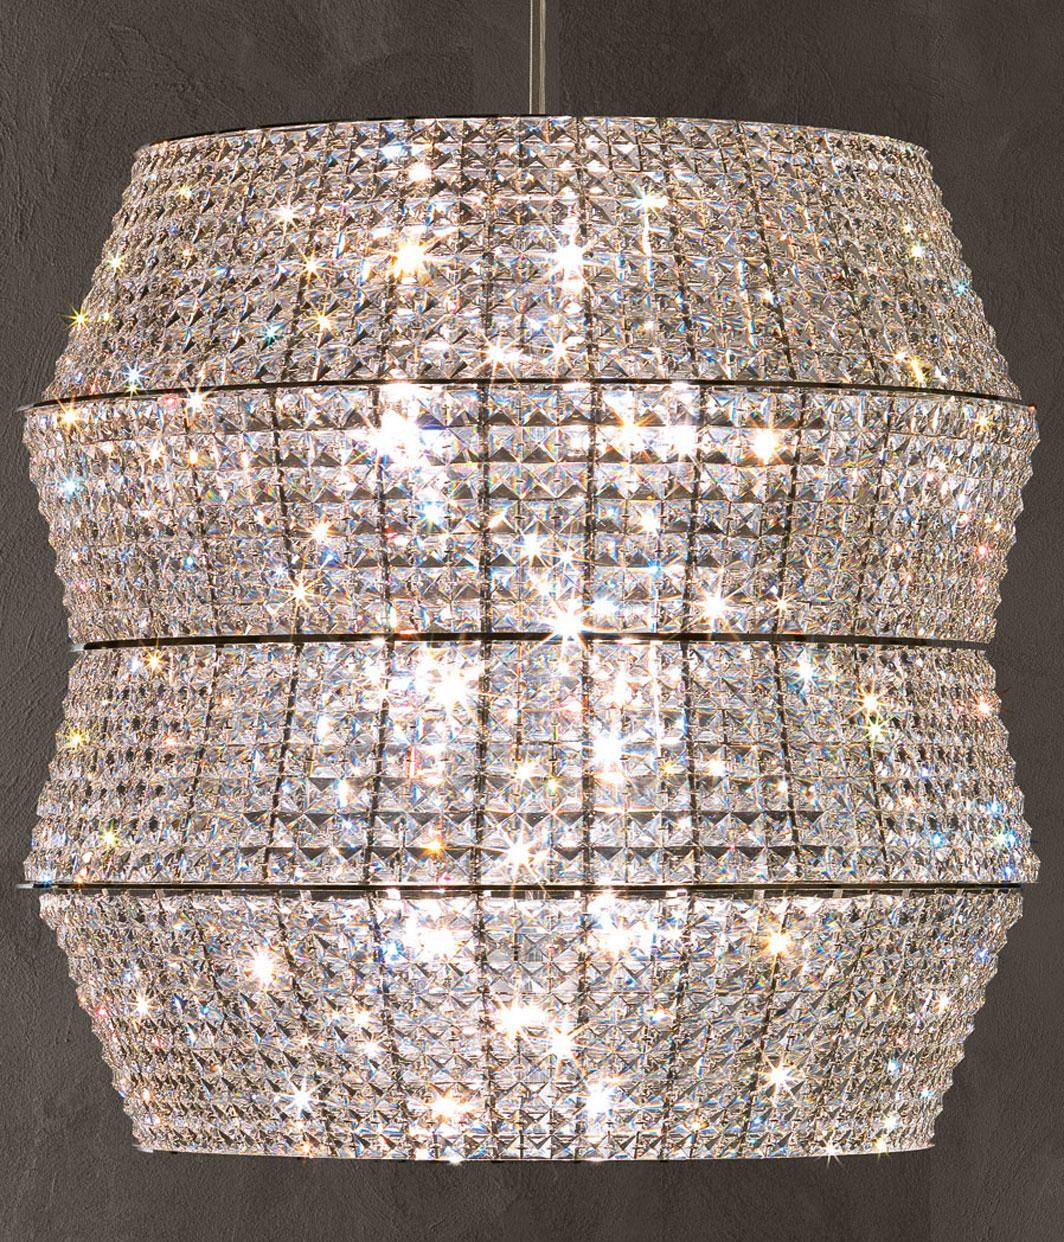 Aufhängung Parure mit Struktur aus Stahl in
verchromt und mit geschliffenem Kristallglas
miteinander verbunden sind. Mit 13 Glühbirnen, Lampenfassung
Typ G9, max. 42 Watt. Glühbirnen nicht enthalten.
Hergestellt in Italien.
Durchmesser 80 x